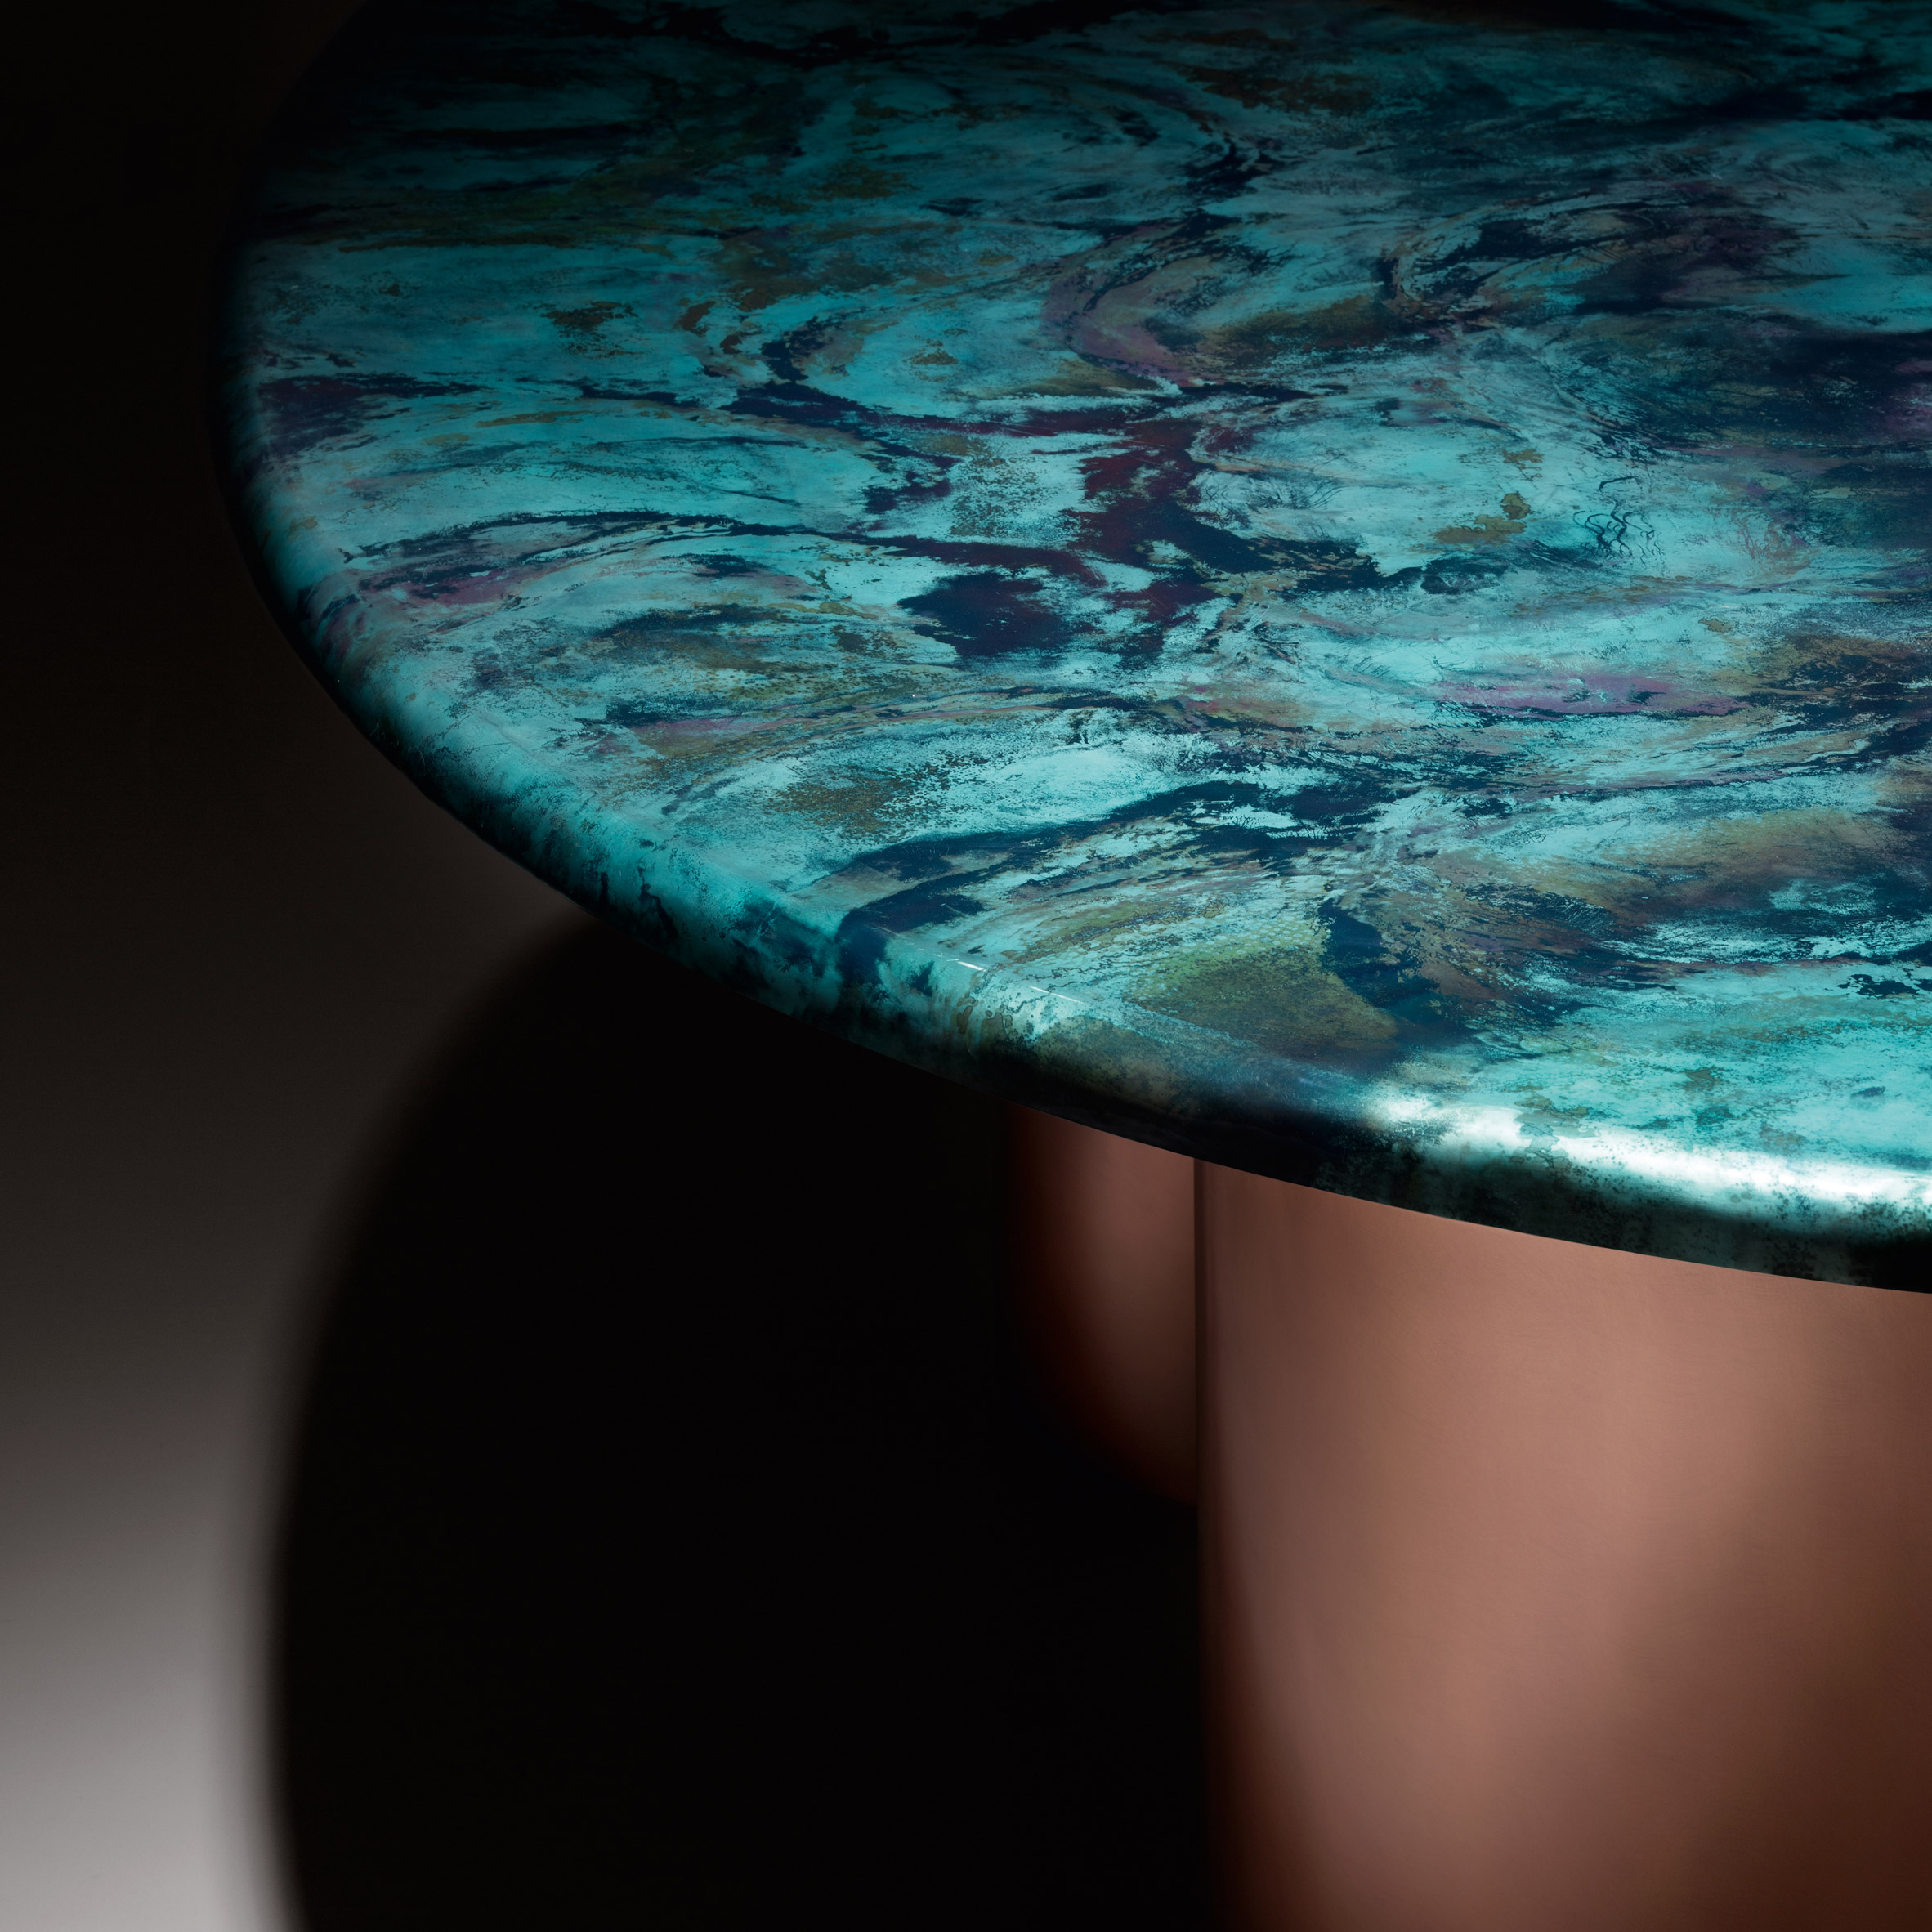 Baia table by Zanellato/Bortotto for De Castelli